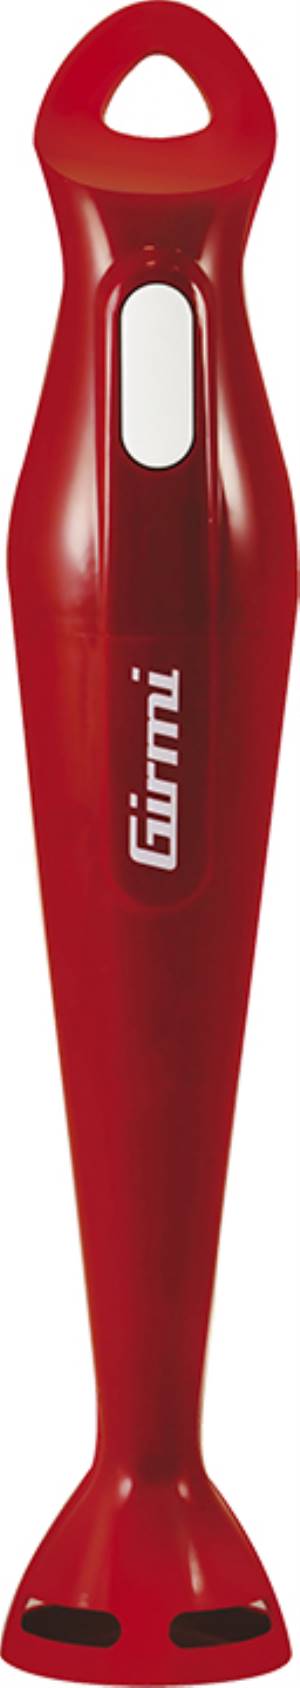 Girmi Mixer Immersione MX01 4 lame 170W Rosso